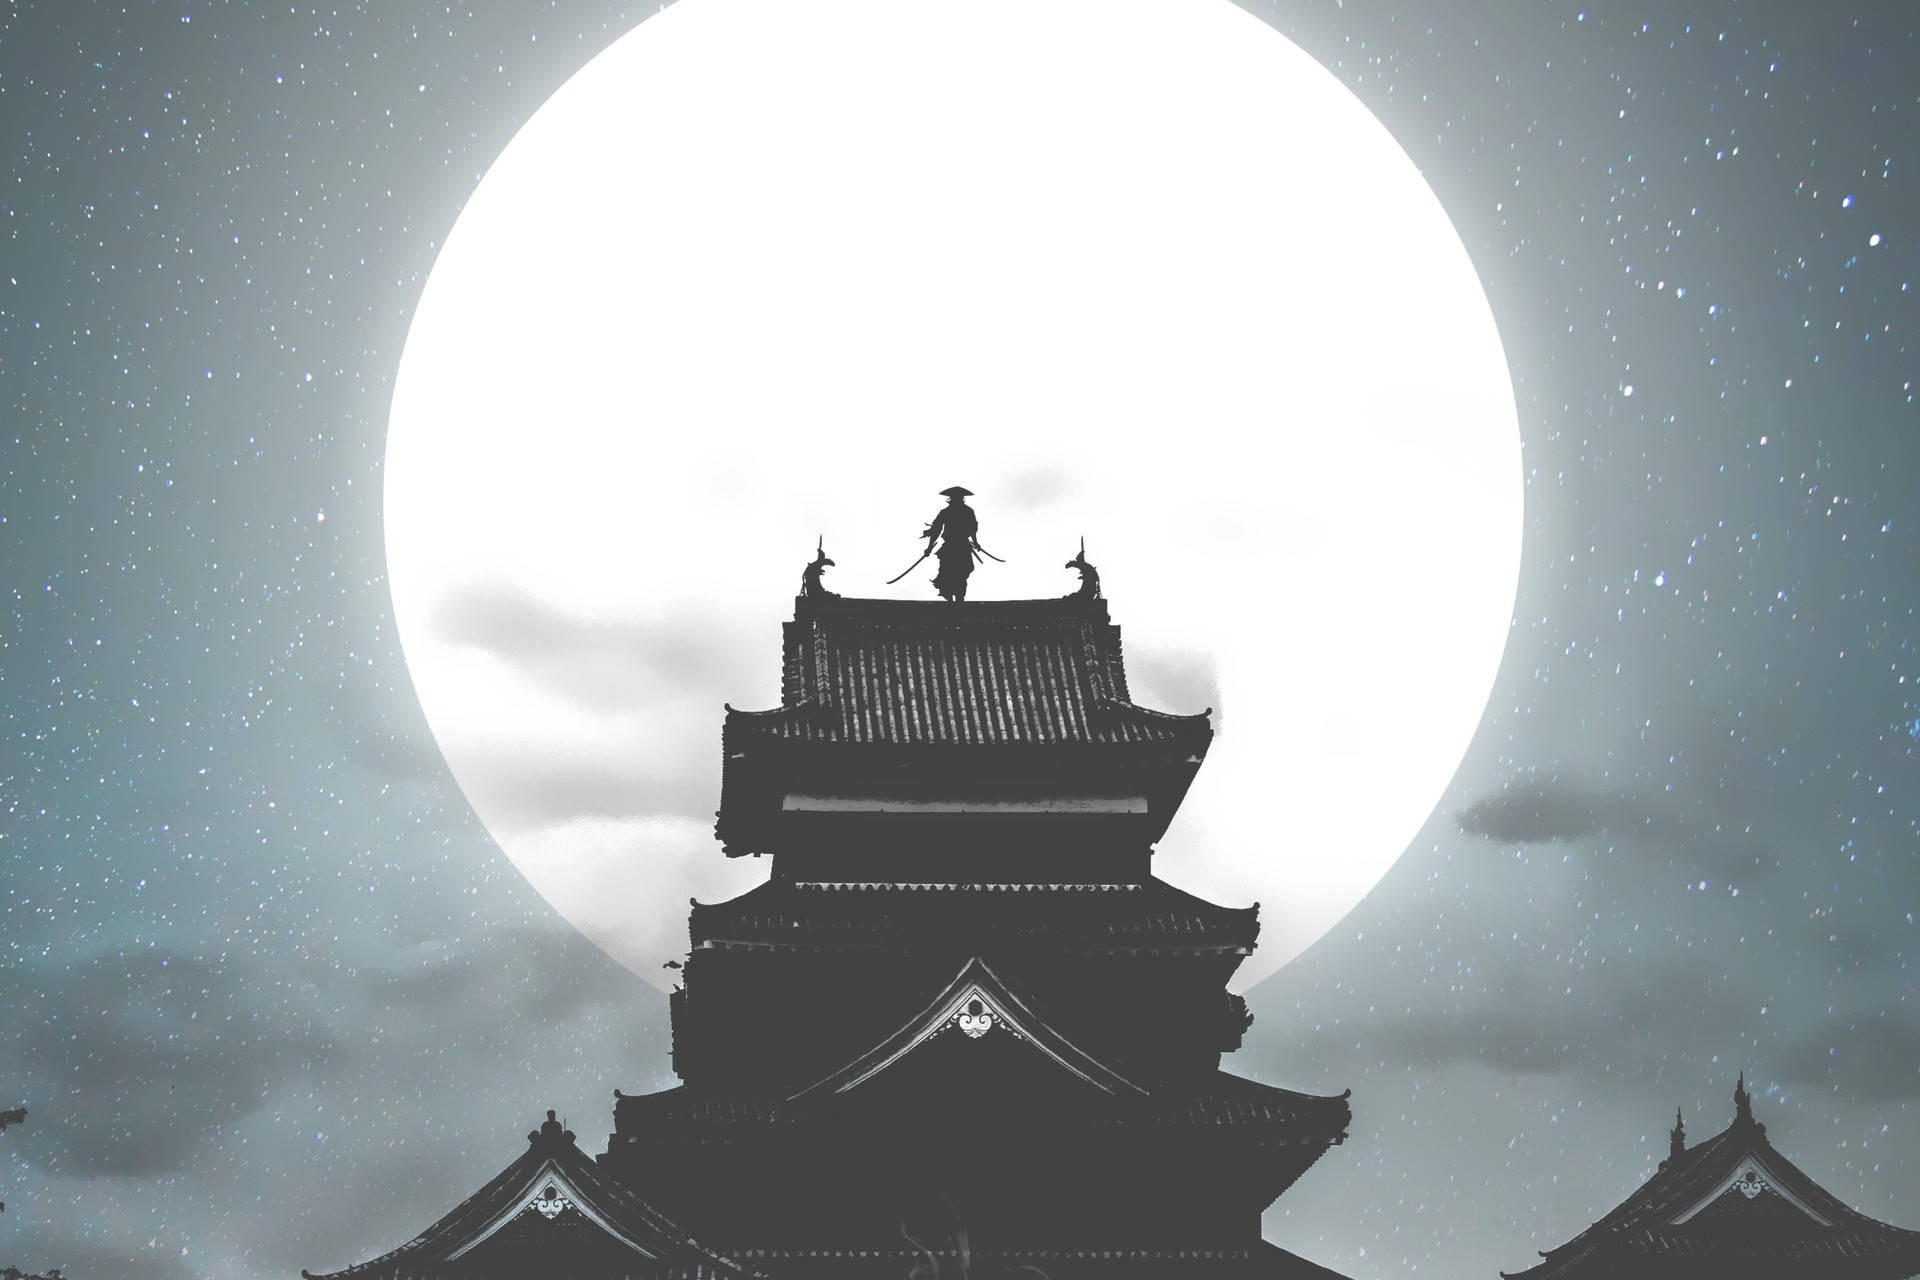 Samurai Silhouette On Moon